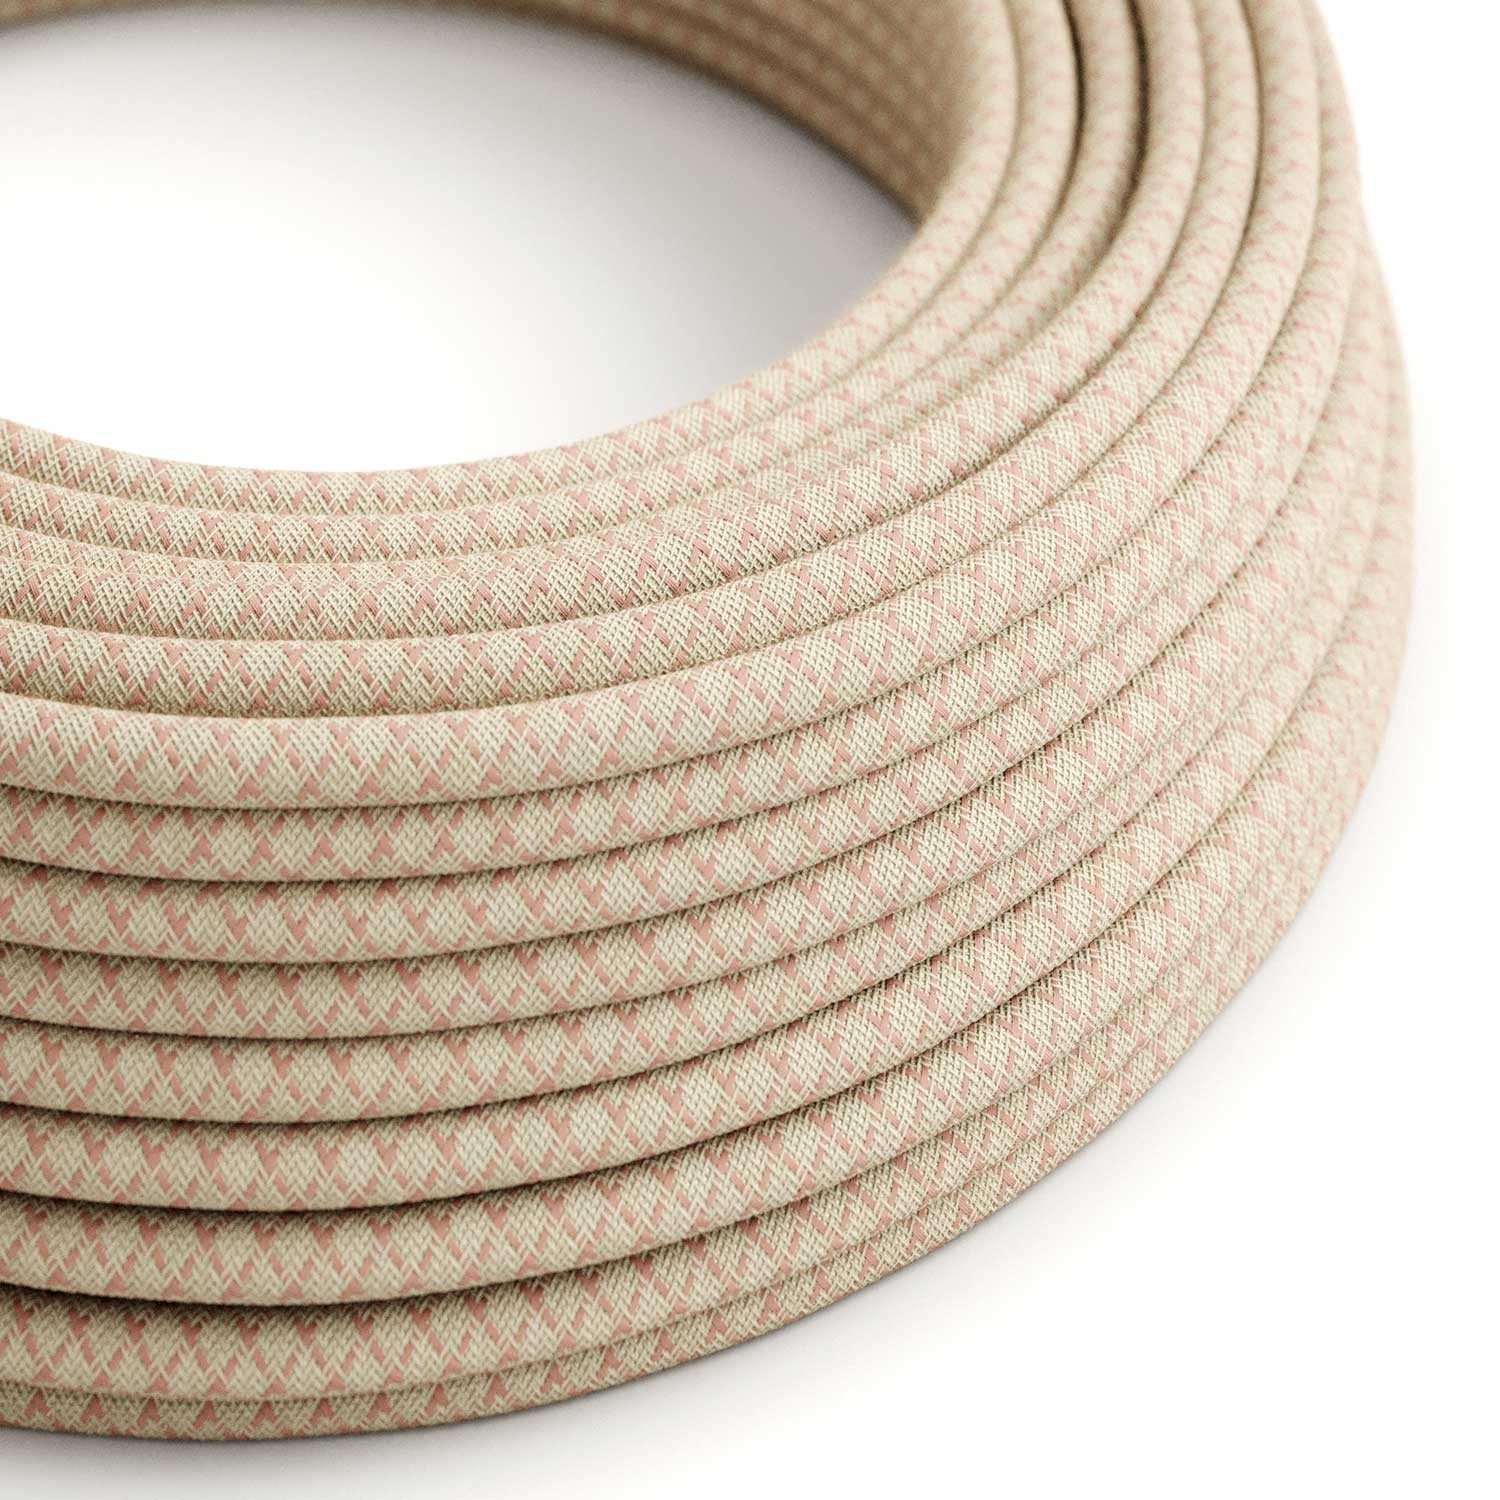 Okrugli tekstilni električni kabel RD61 romb, prirodni lan i ružičasti pamuk